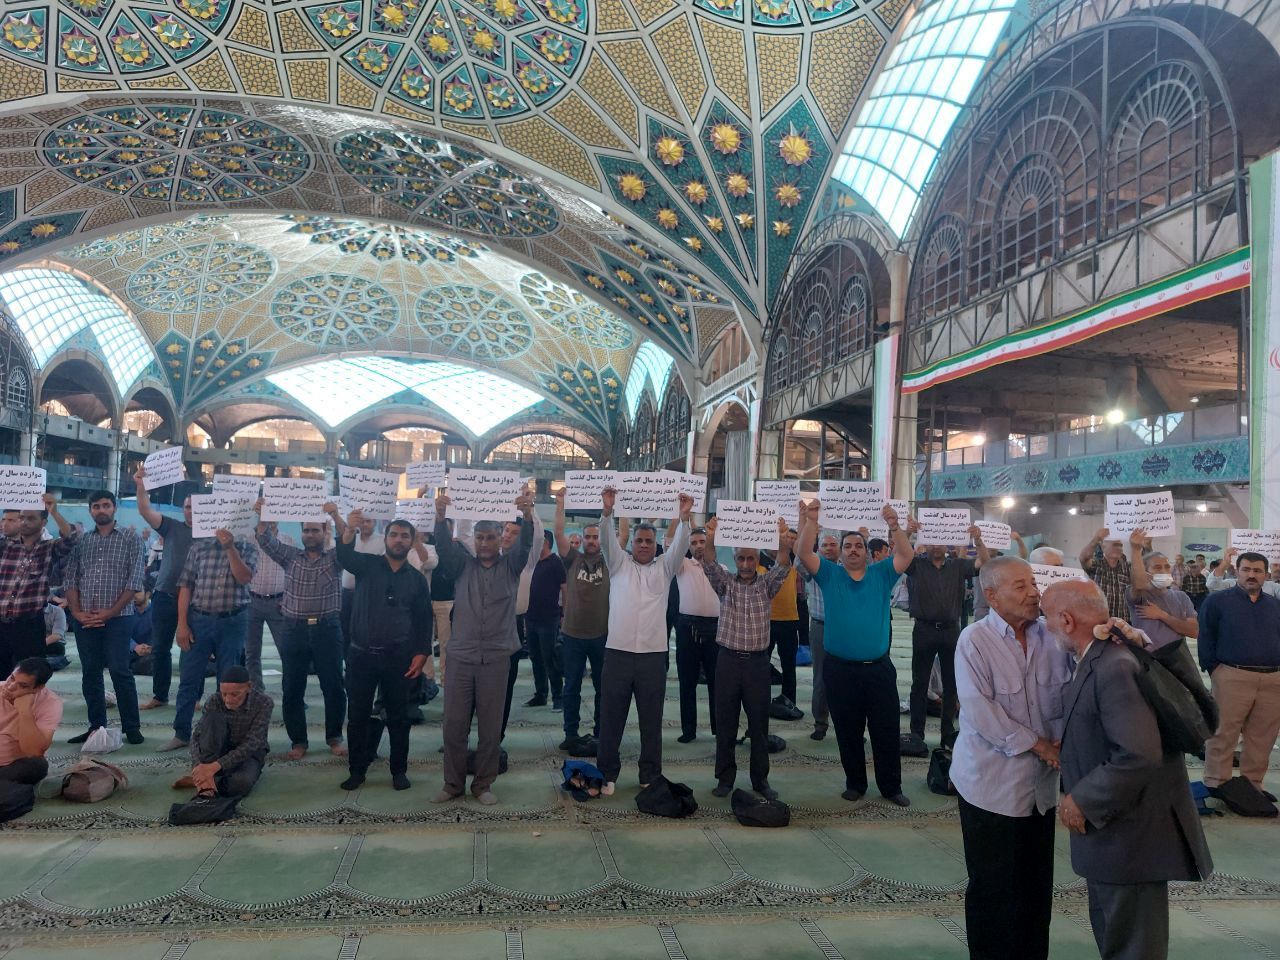  تصاویری از تجمع اعتراضی در نماز جمعه اصفهان